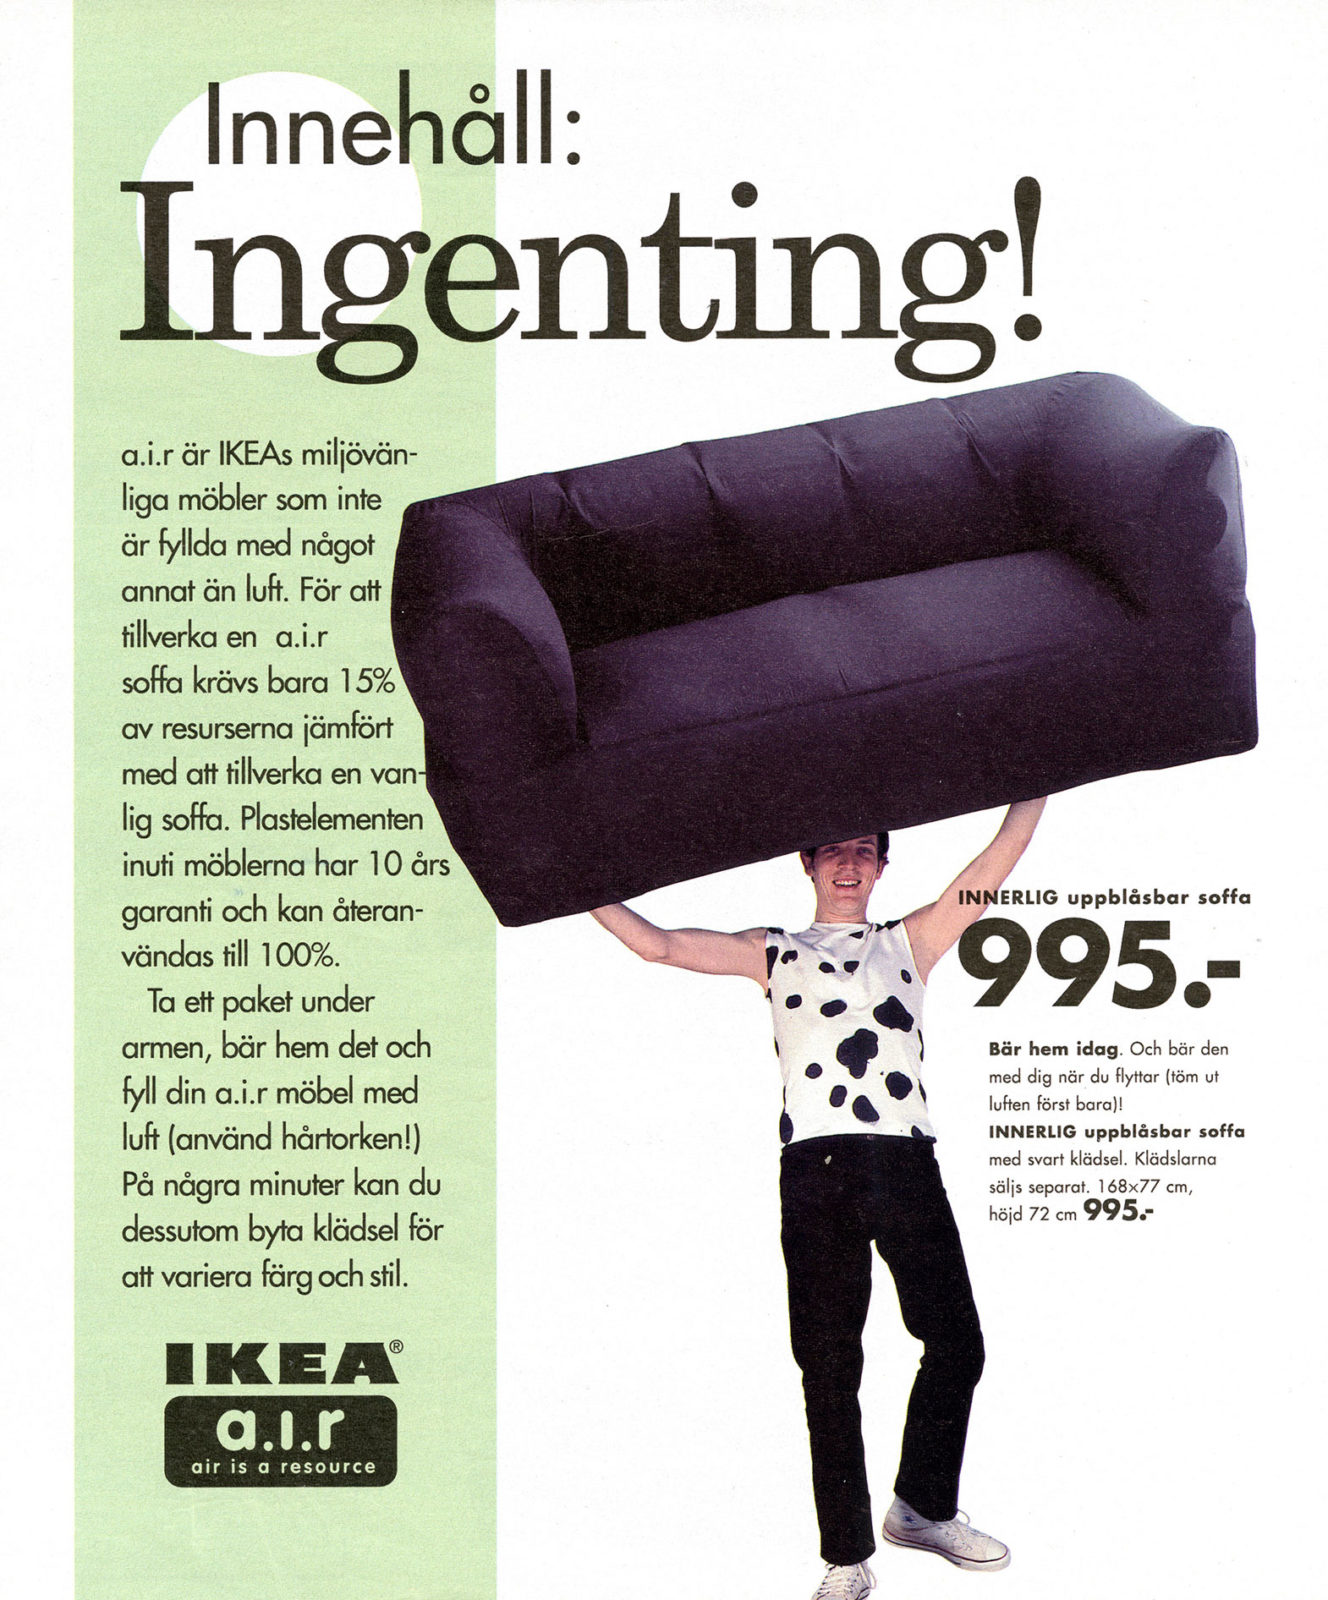 Seite aus einem IKEA Katalog. Ein Mann hebt ein Sofa über seinen Kopf. Daneben ein Text über aufblasbare IKEA Möbel.